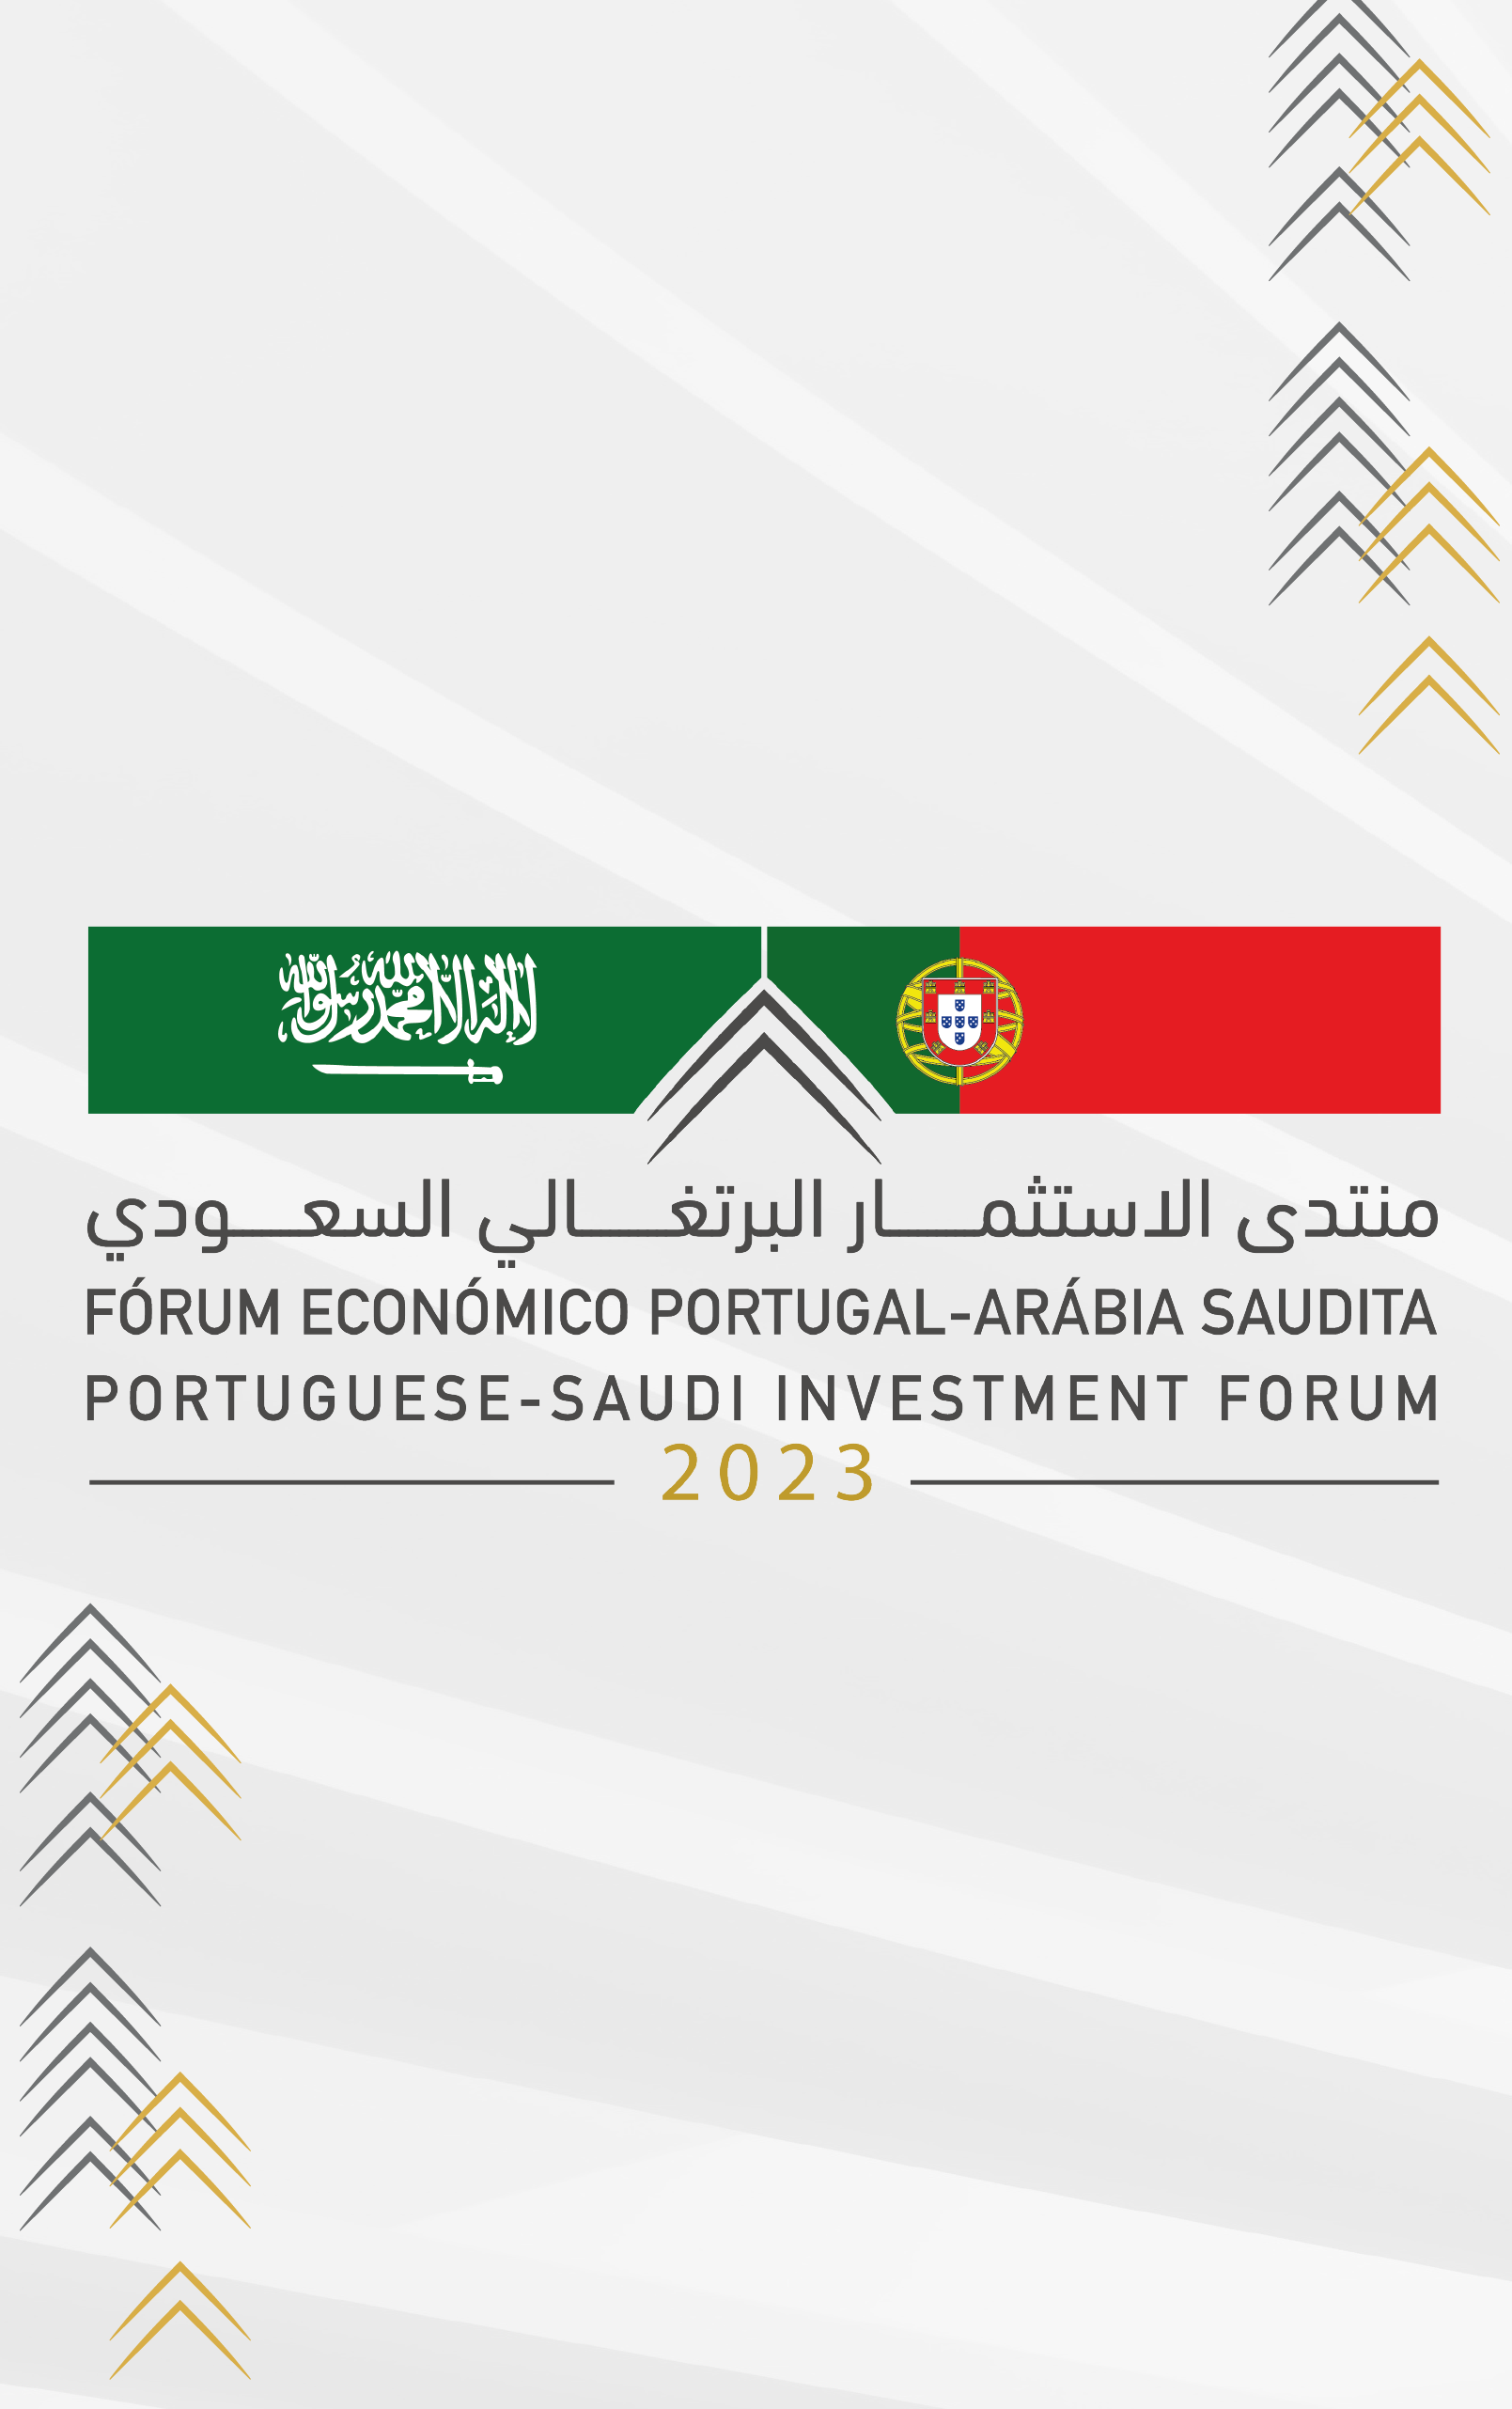 Portuguese - Saudi Investment Forum